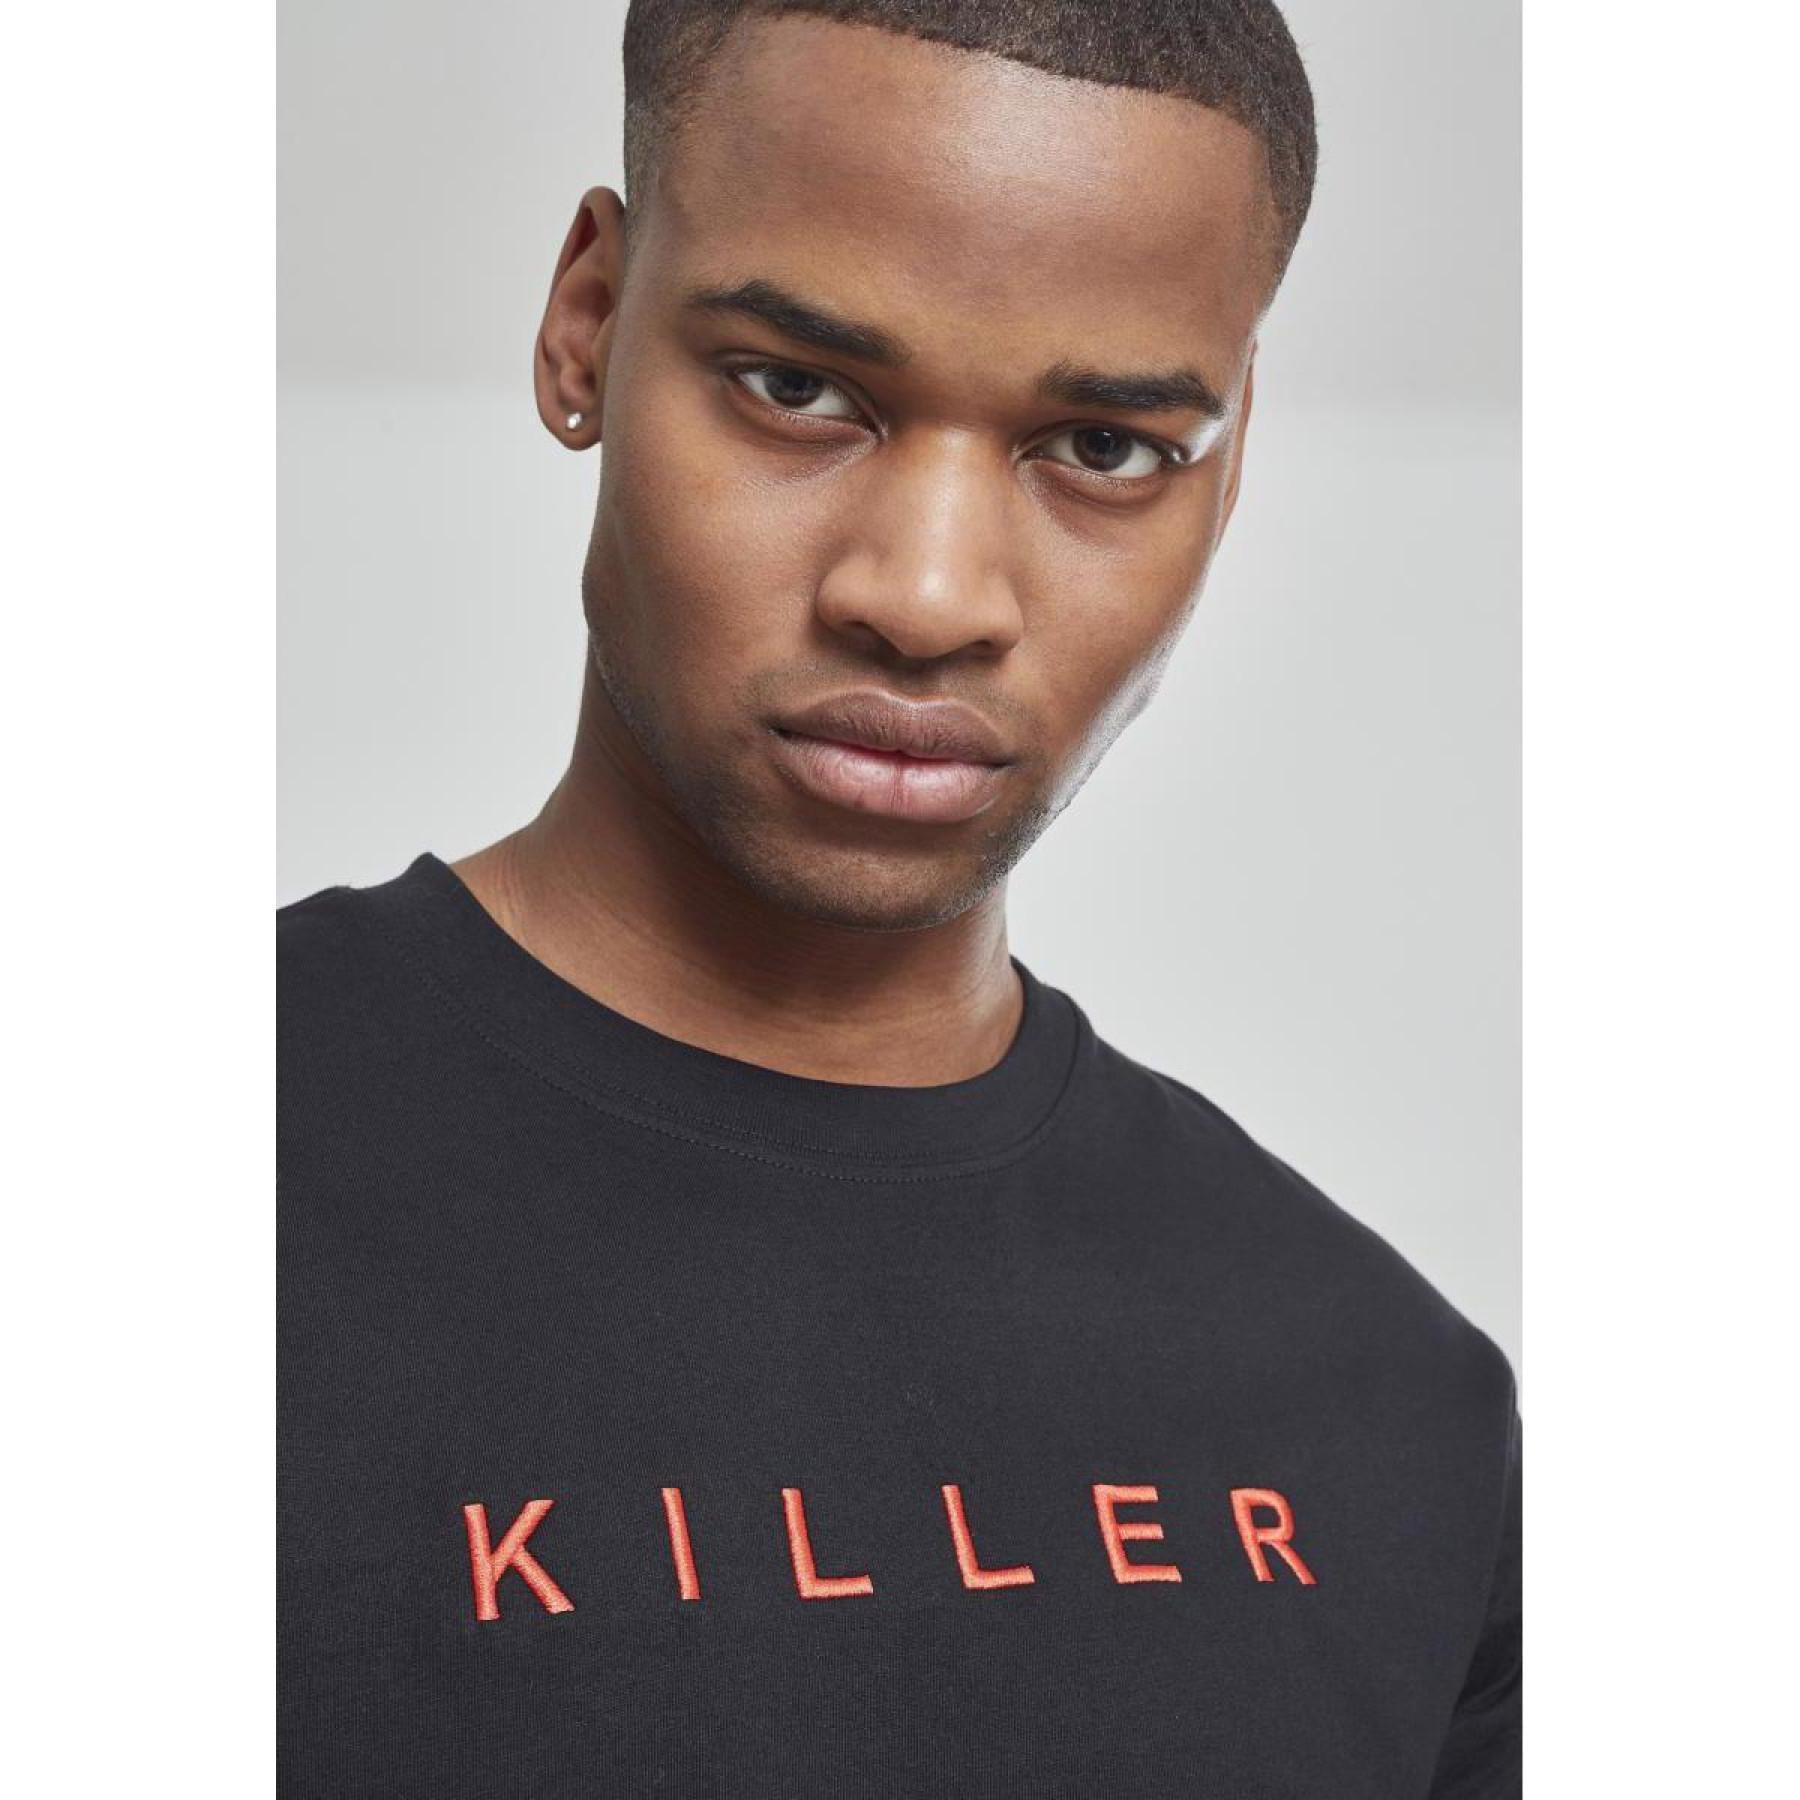 T-shirt Mister Tee killer